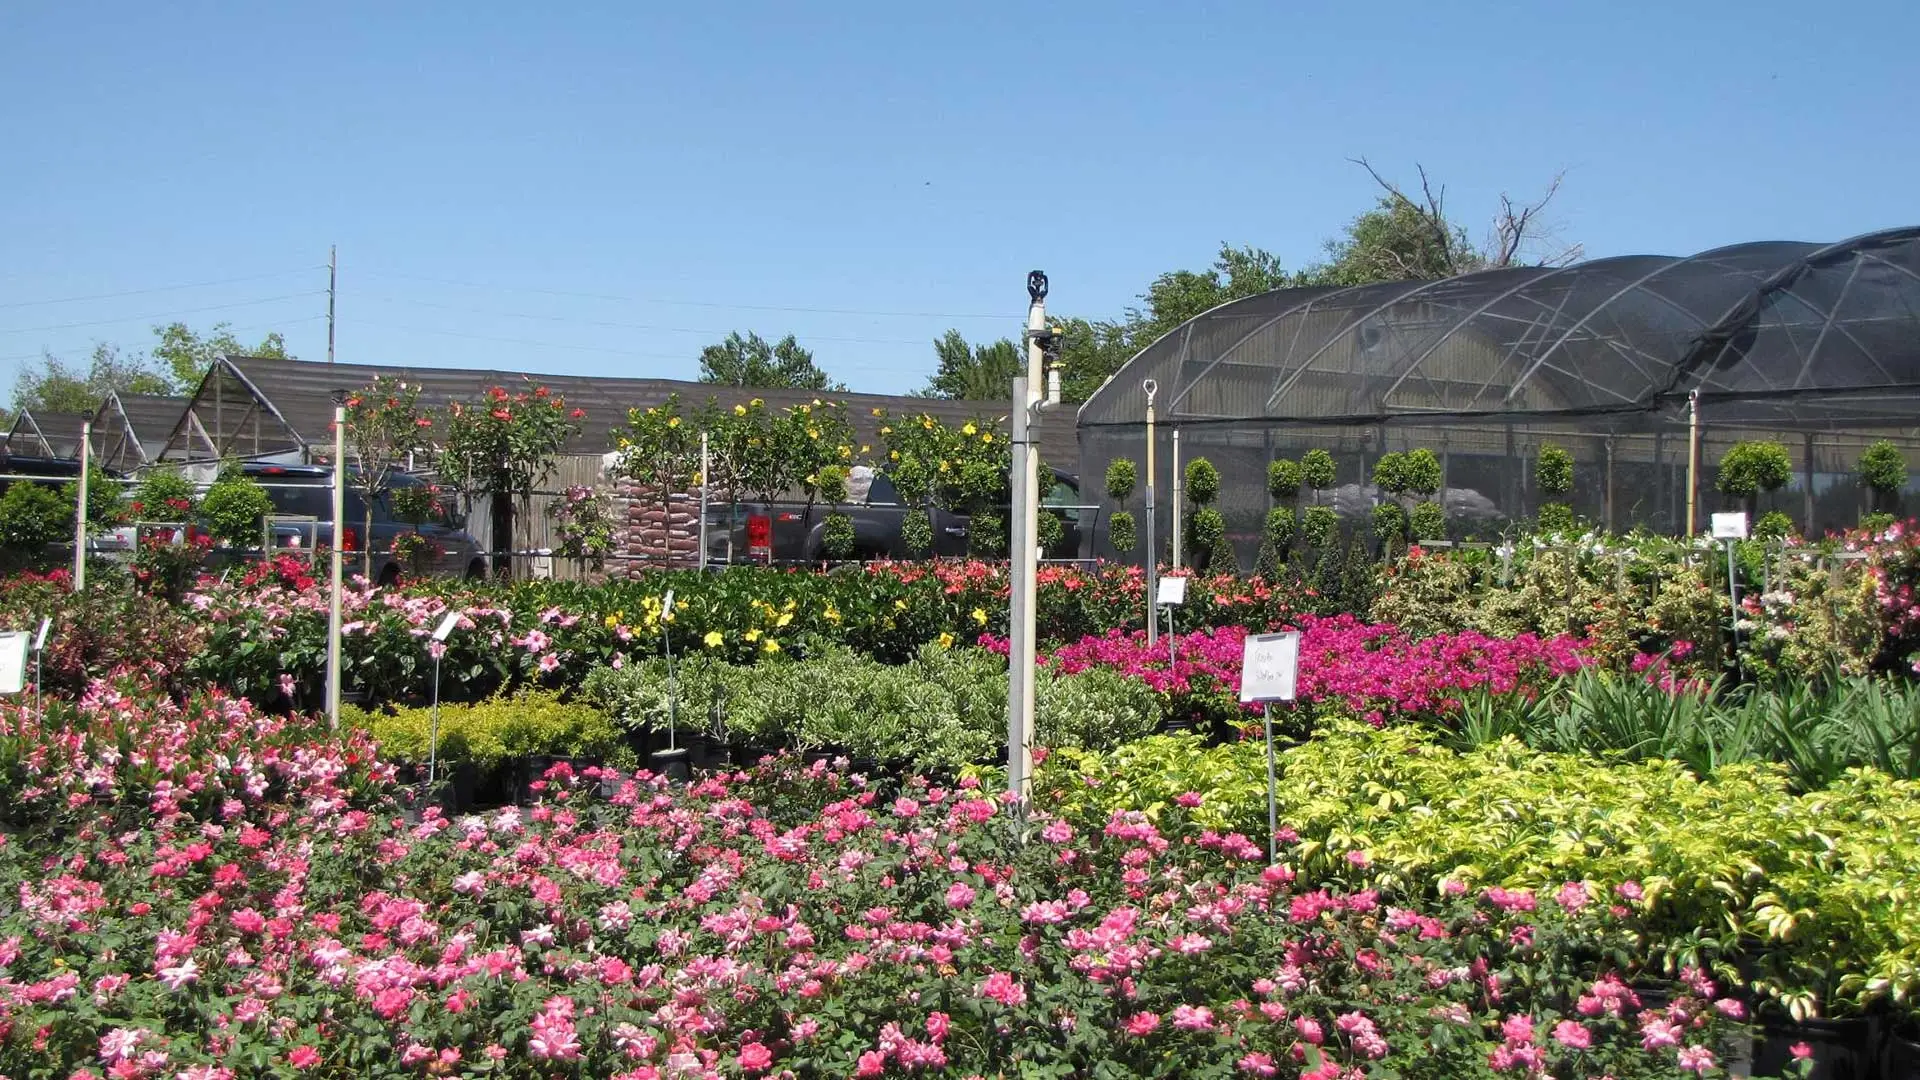 Landscape nursery with blooming flowers in Apopka, FL.